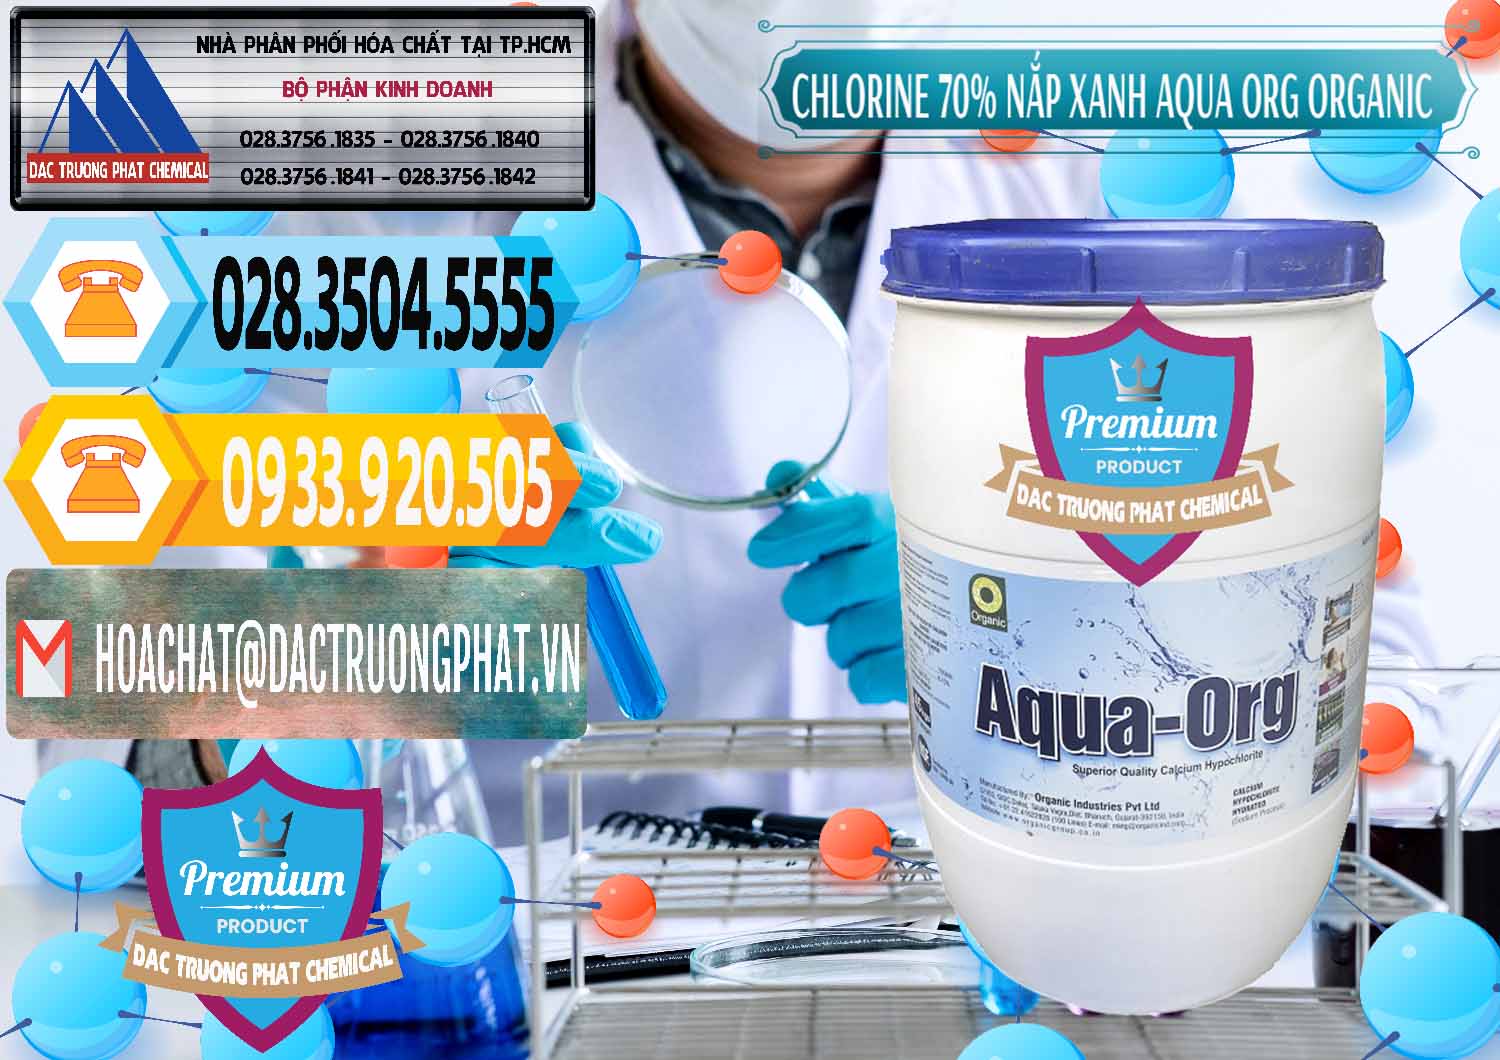 Nơi chuyên cung ứng ( bán ) Chlorine – Clorin 70% Thùng Tròn Nắp Xanh Aqua ORG Organic Ấn Độ India - 0247 - Cty kinh doanh _ phân phối hóa chất tại TP.HCM - hoachattayrua.net